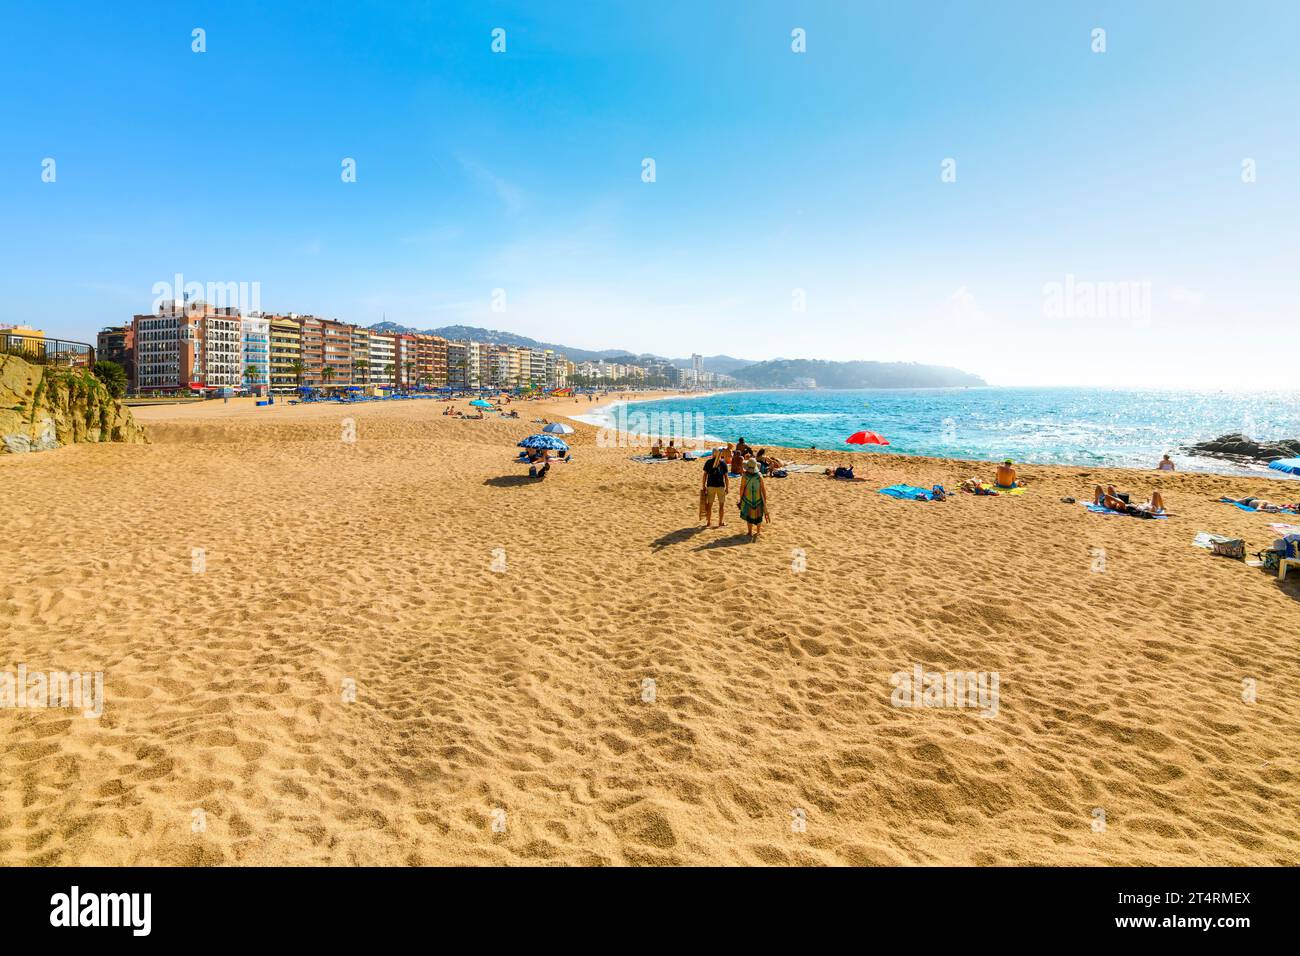 Spanier und Touristen genießen einen Sommertag am breiten Sandstrand Playa Grande im spanischen Ferienort Lloret de Mar an der Costa Brava. Stockfoto